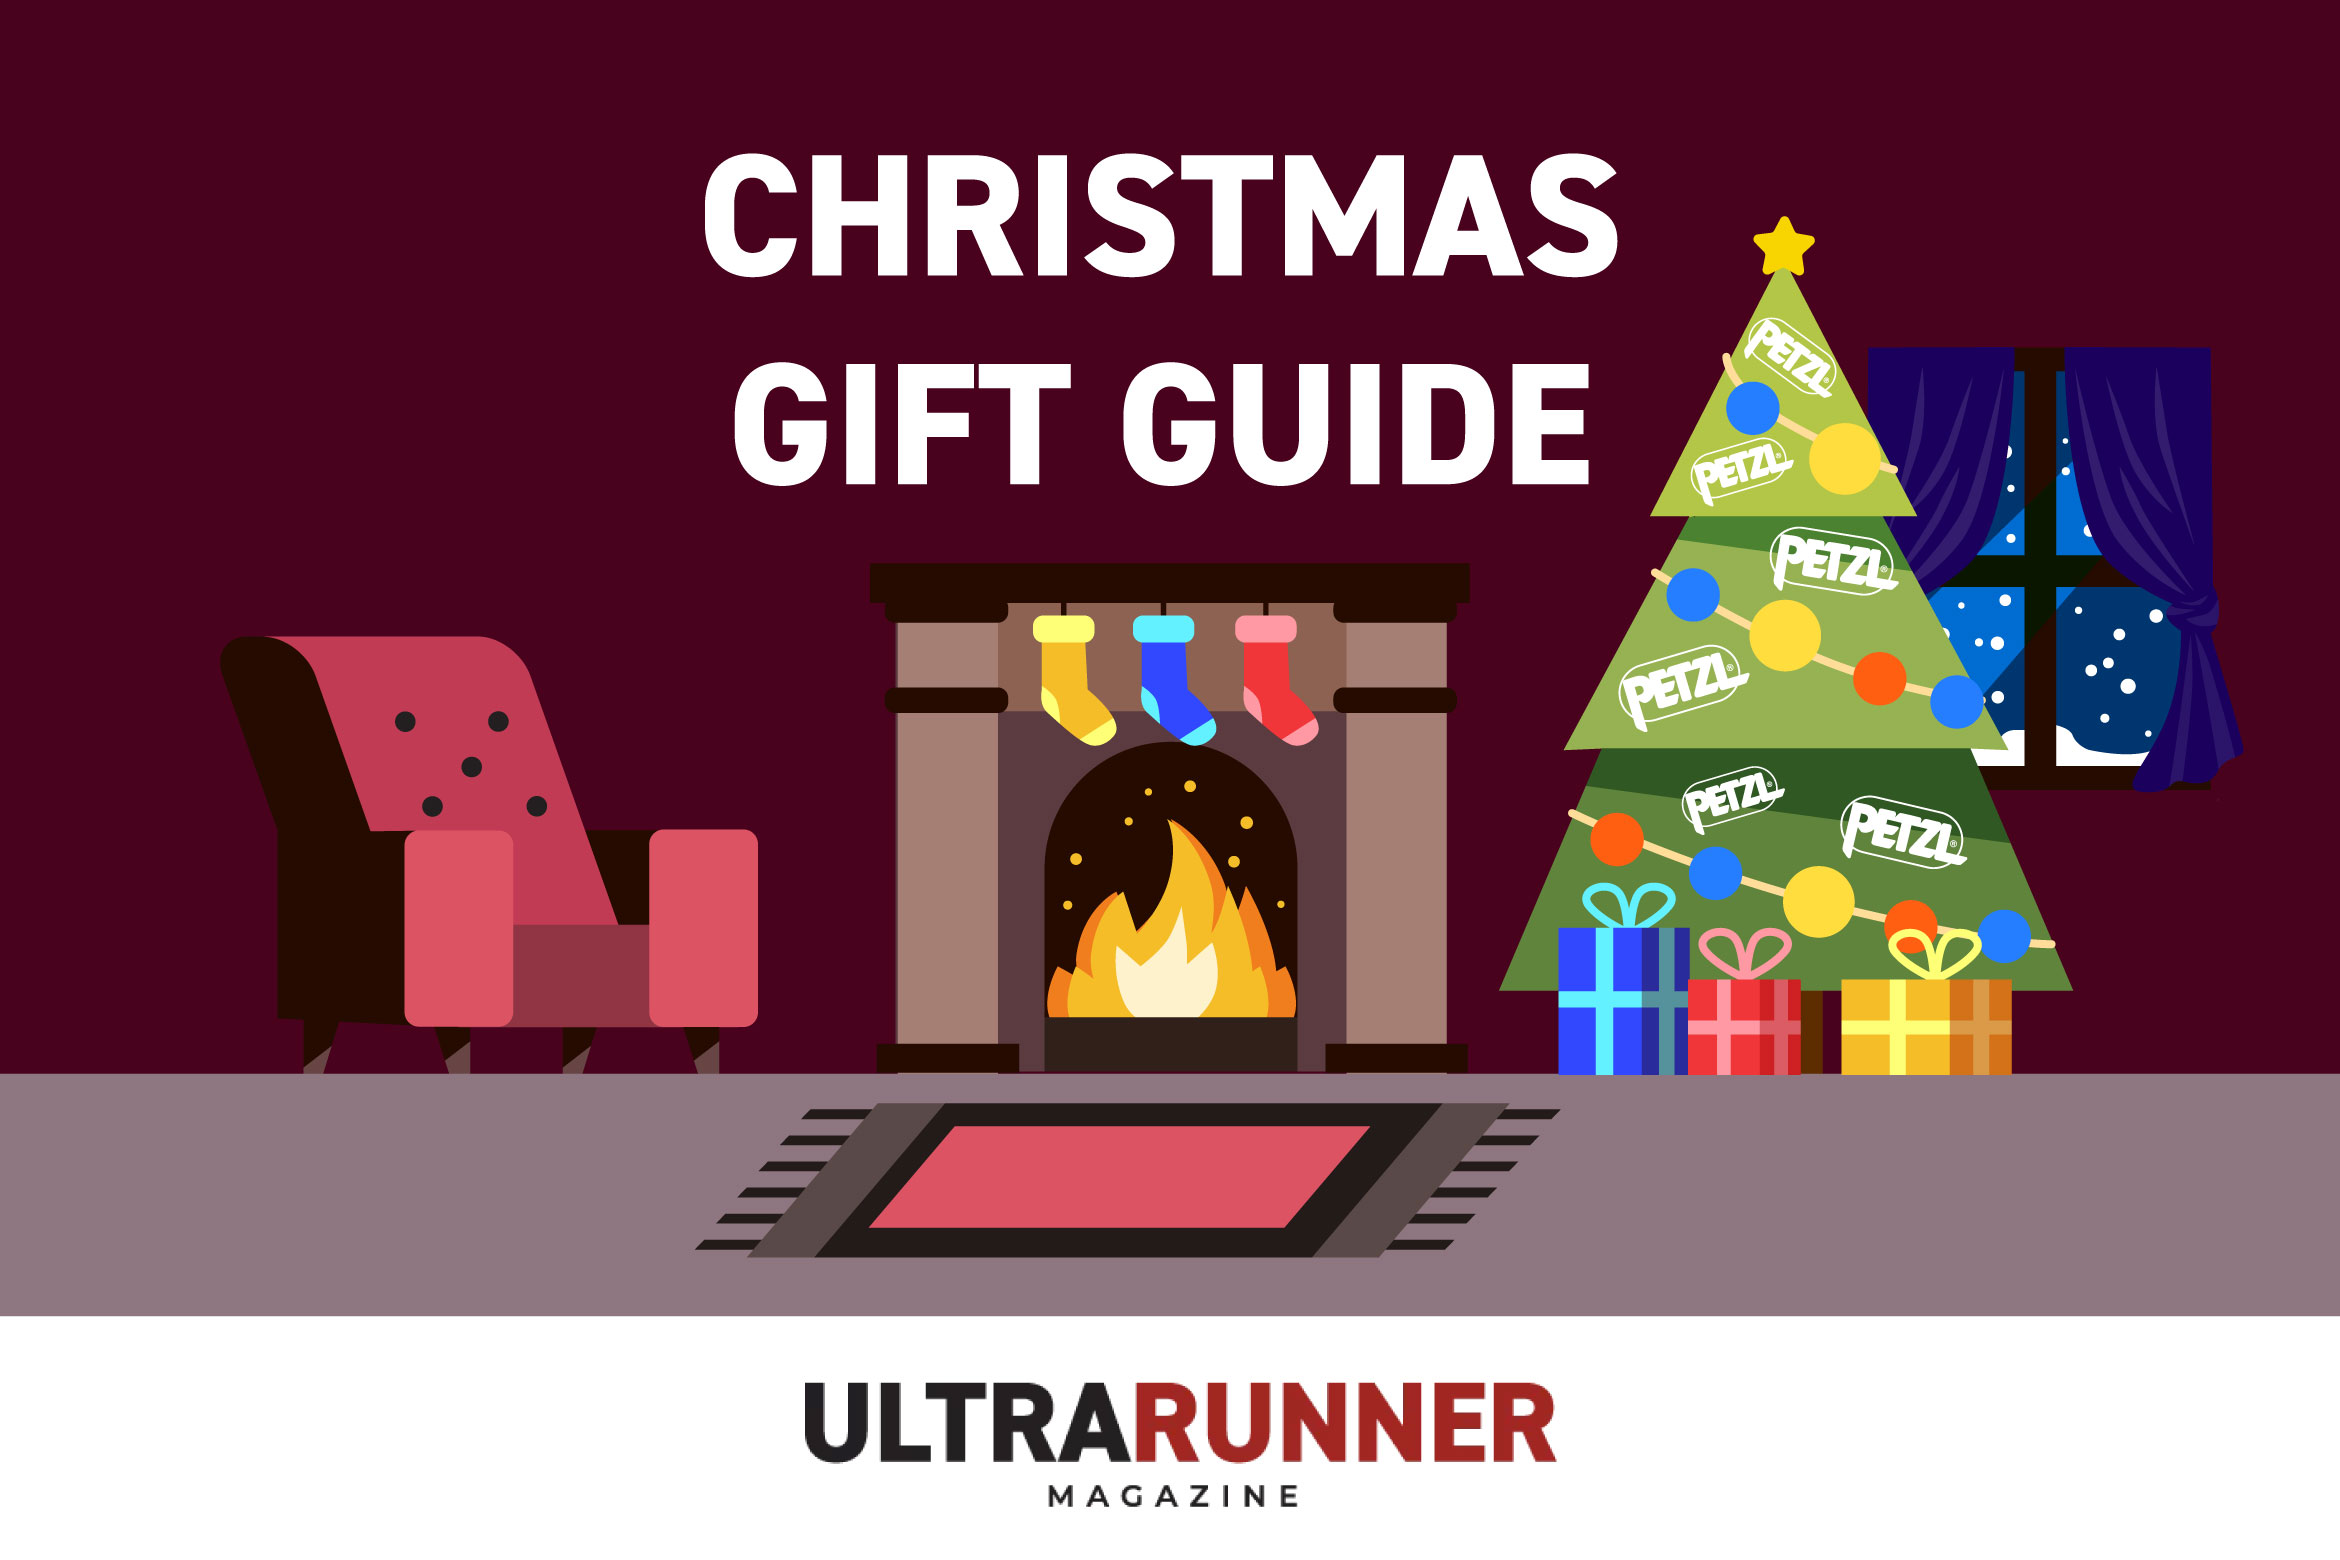 UltraRunner Magazine Christmas gift guide